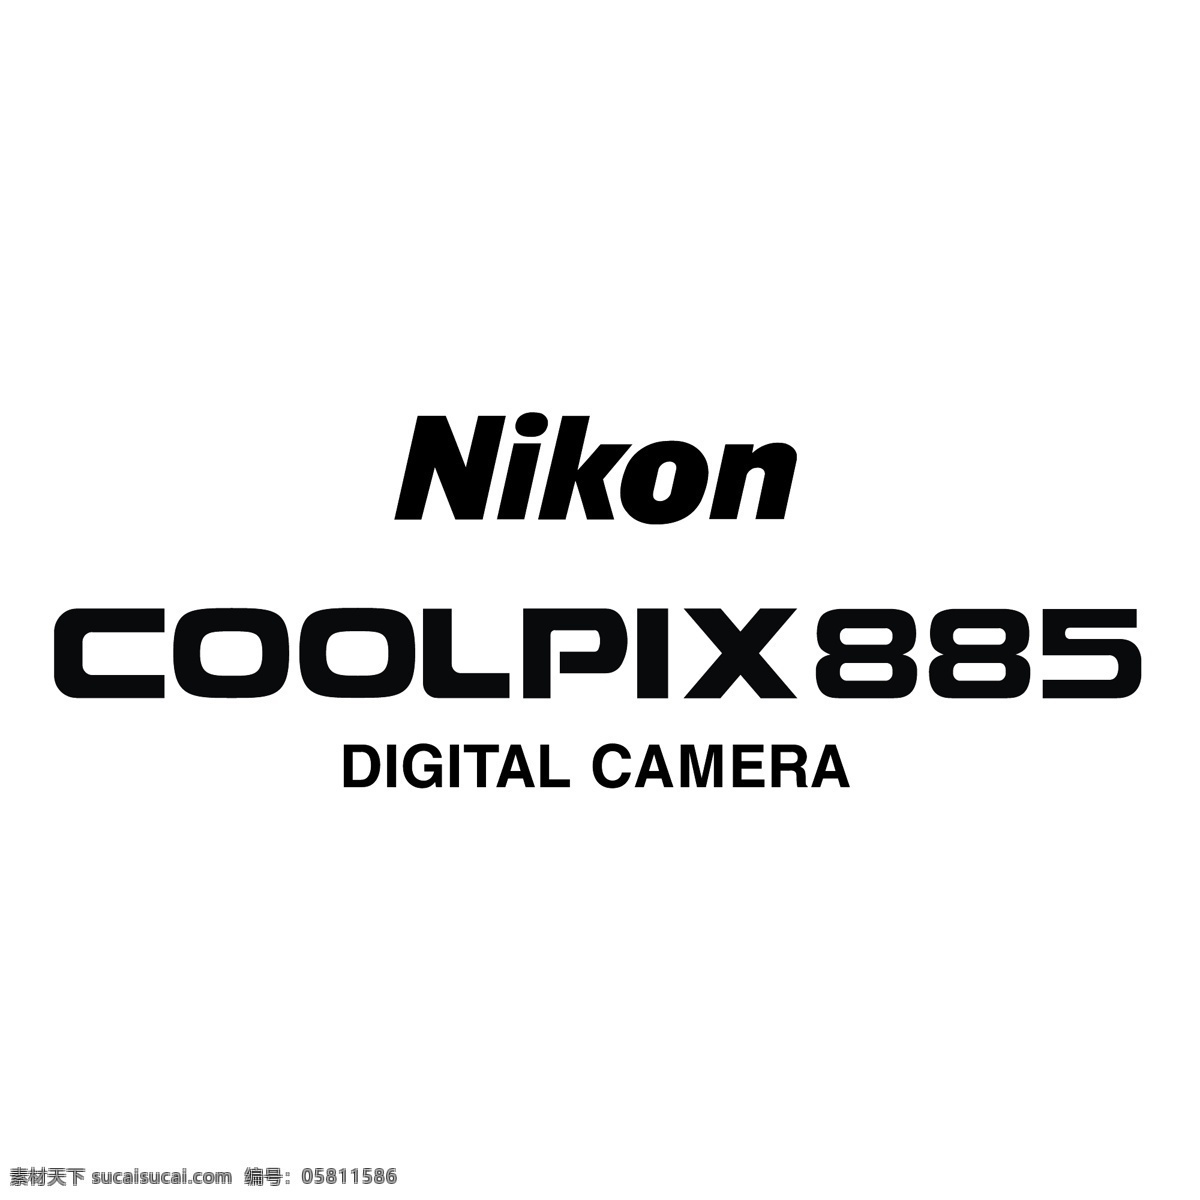 885 尼康 coolpix 数码相机 向量 向量尼康 设计尼康 艺术 载体 矢量尼康 矢量图 建筑家居